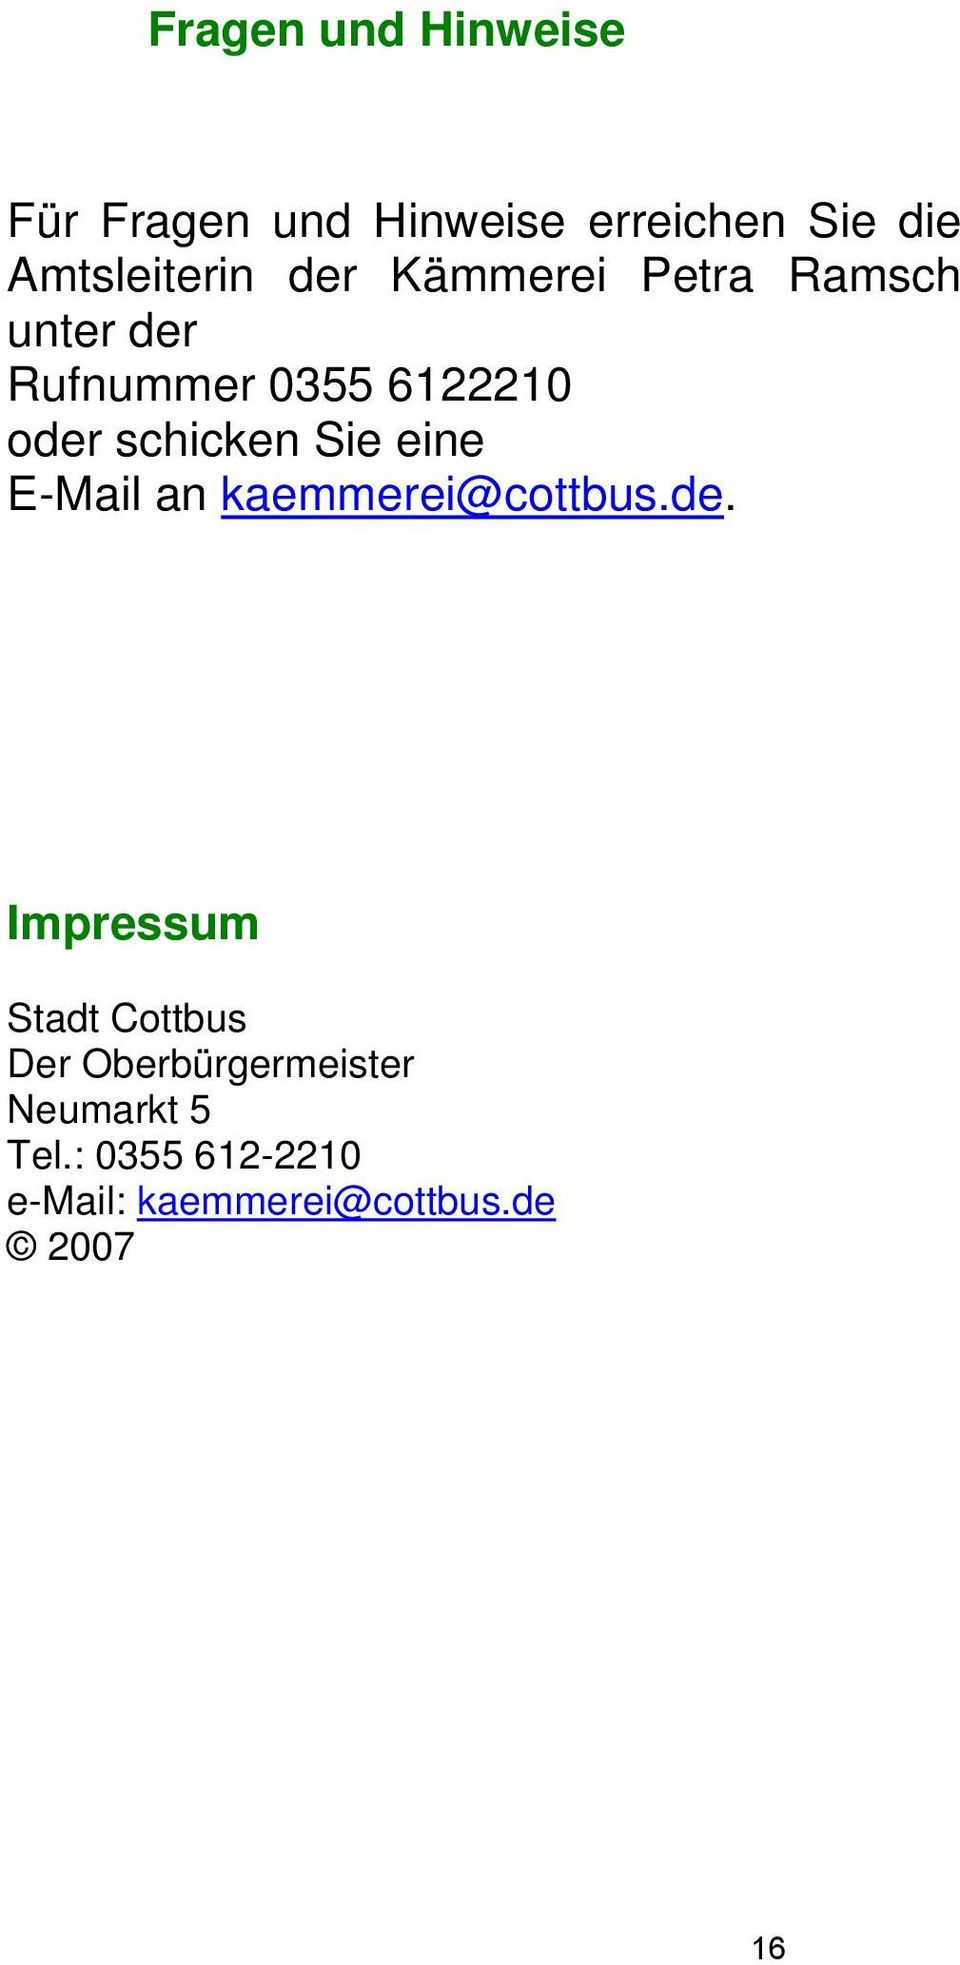 Sie eine E-Mail an kaemmerei@cottbus.de.